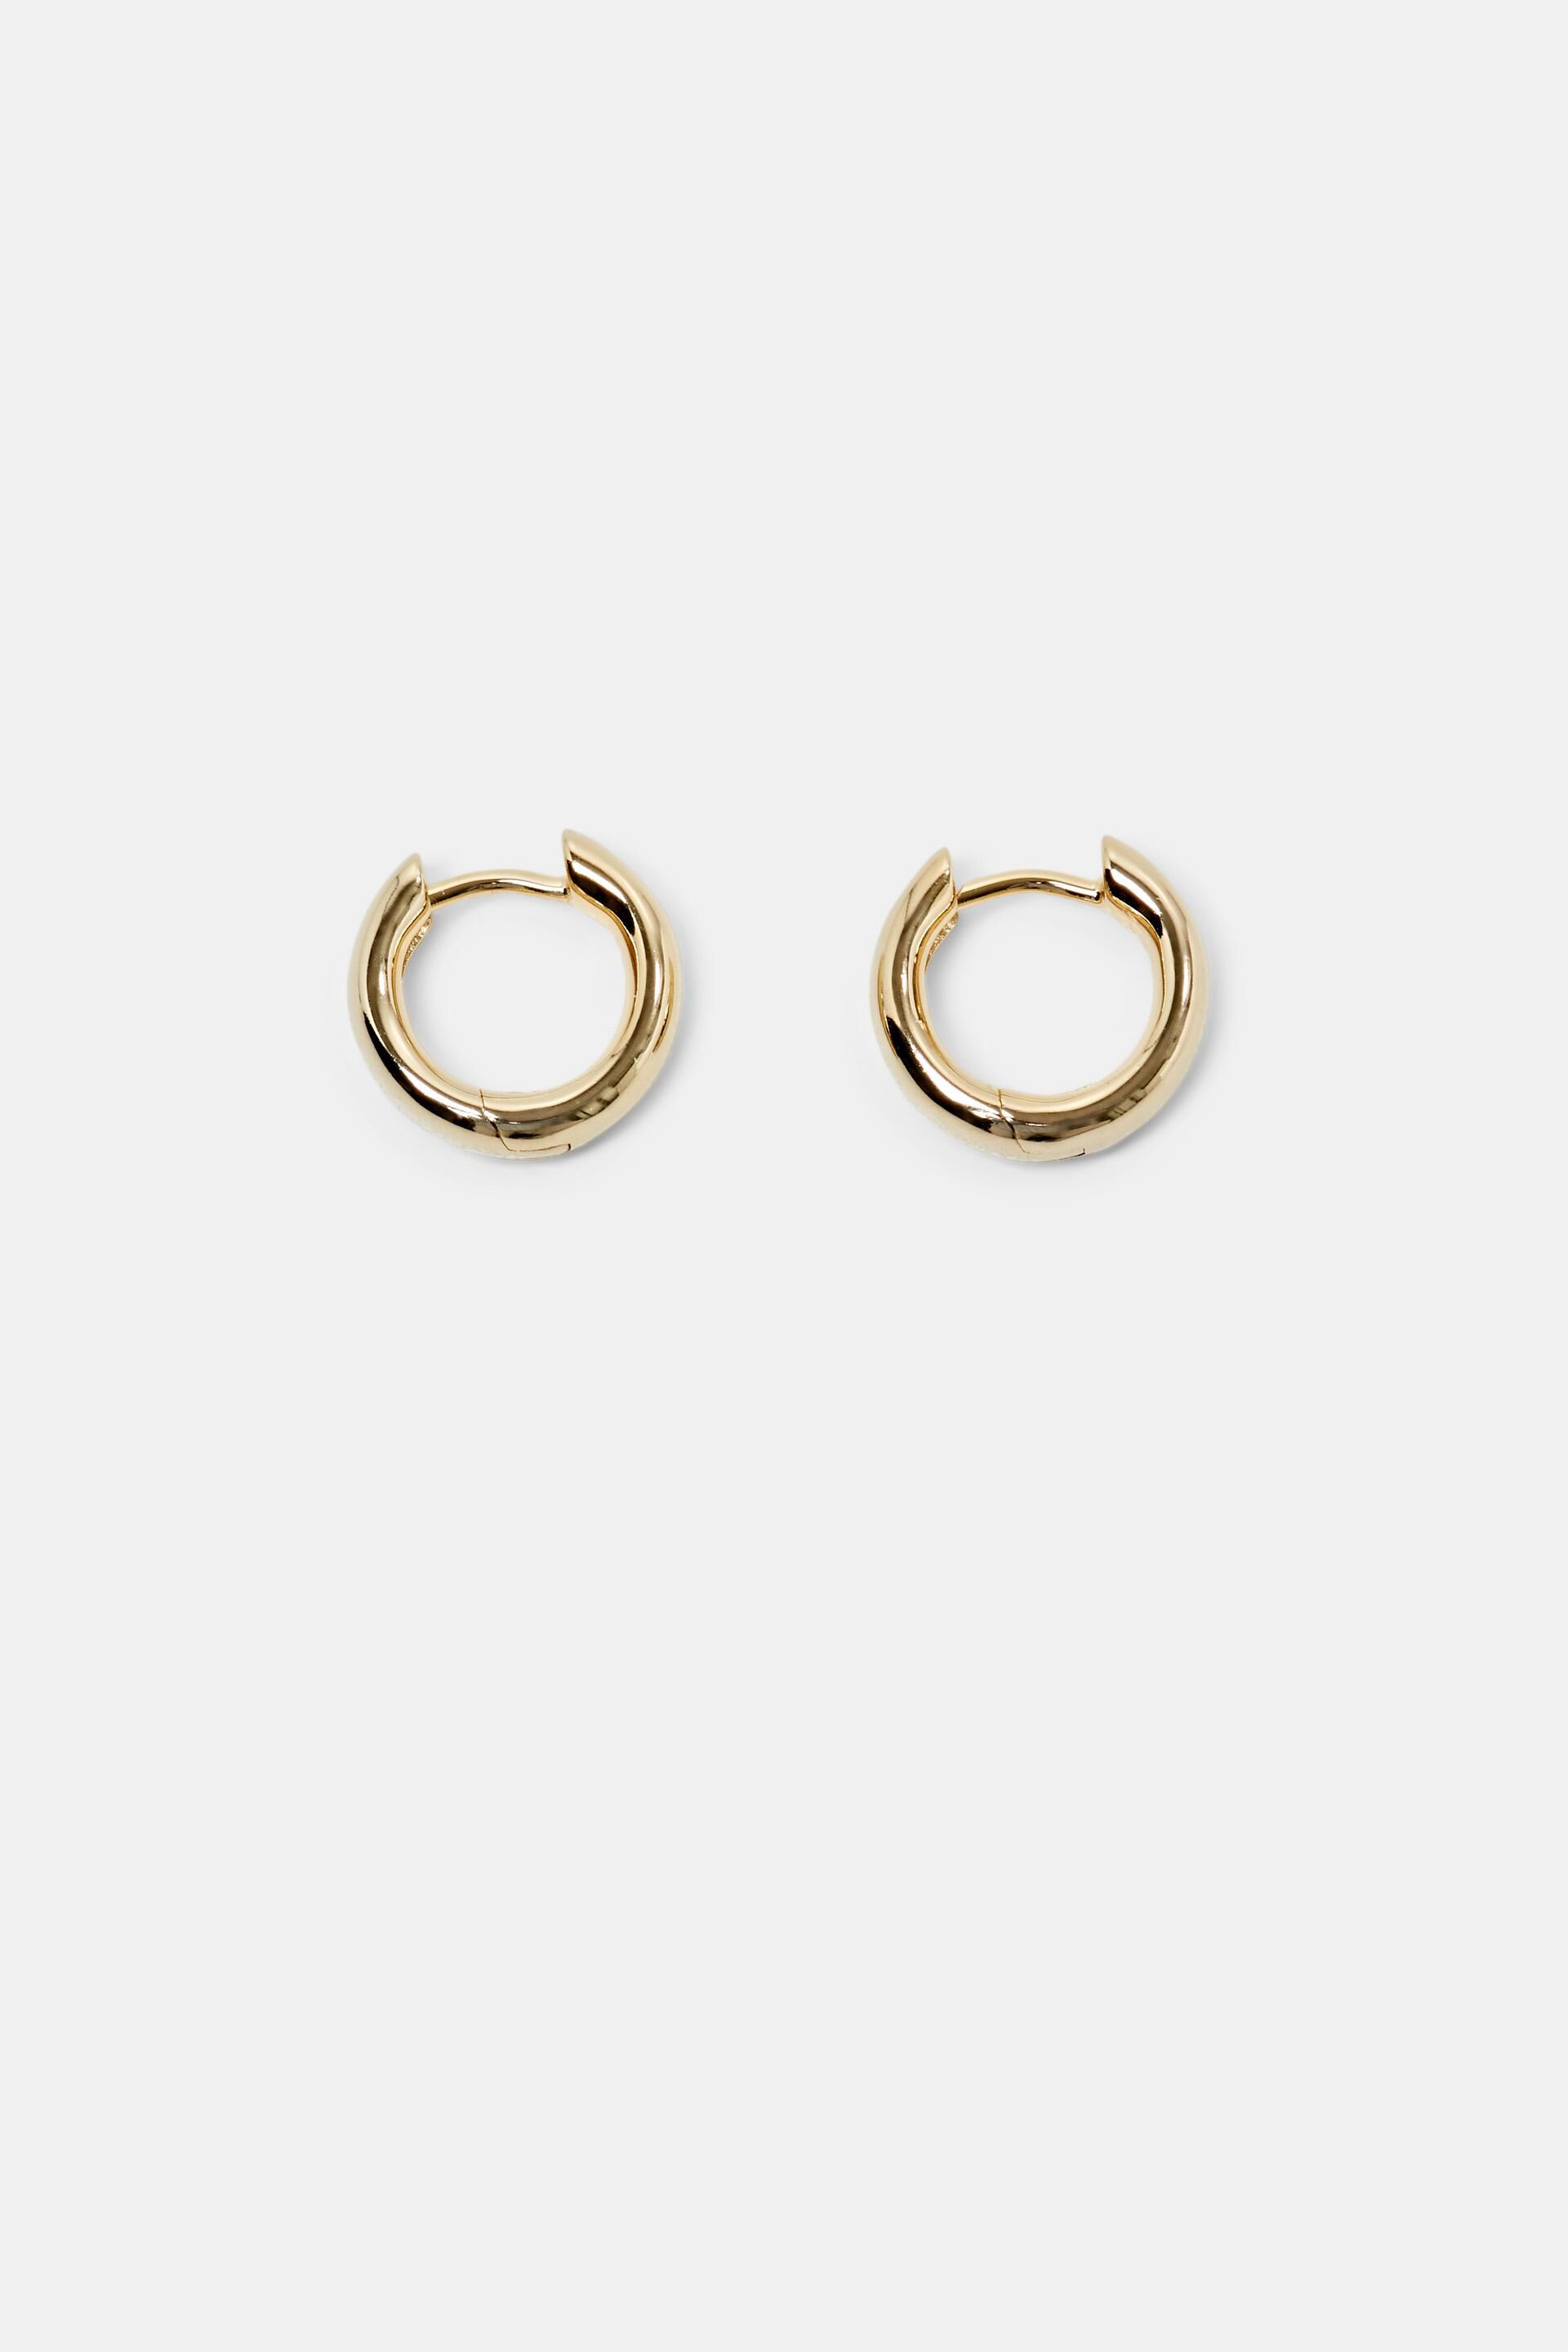 Esprit Silver Sterling Earrings Huggie Gold-Tone Hoop